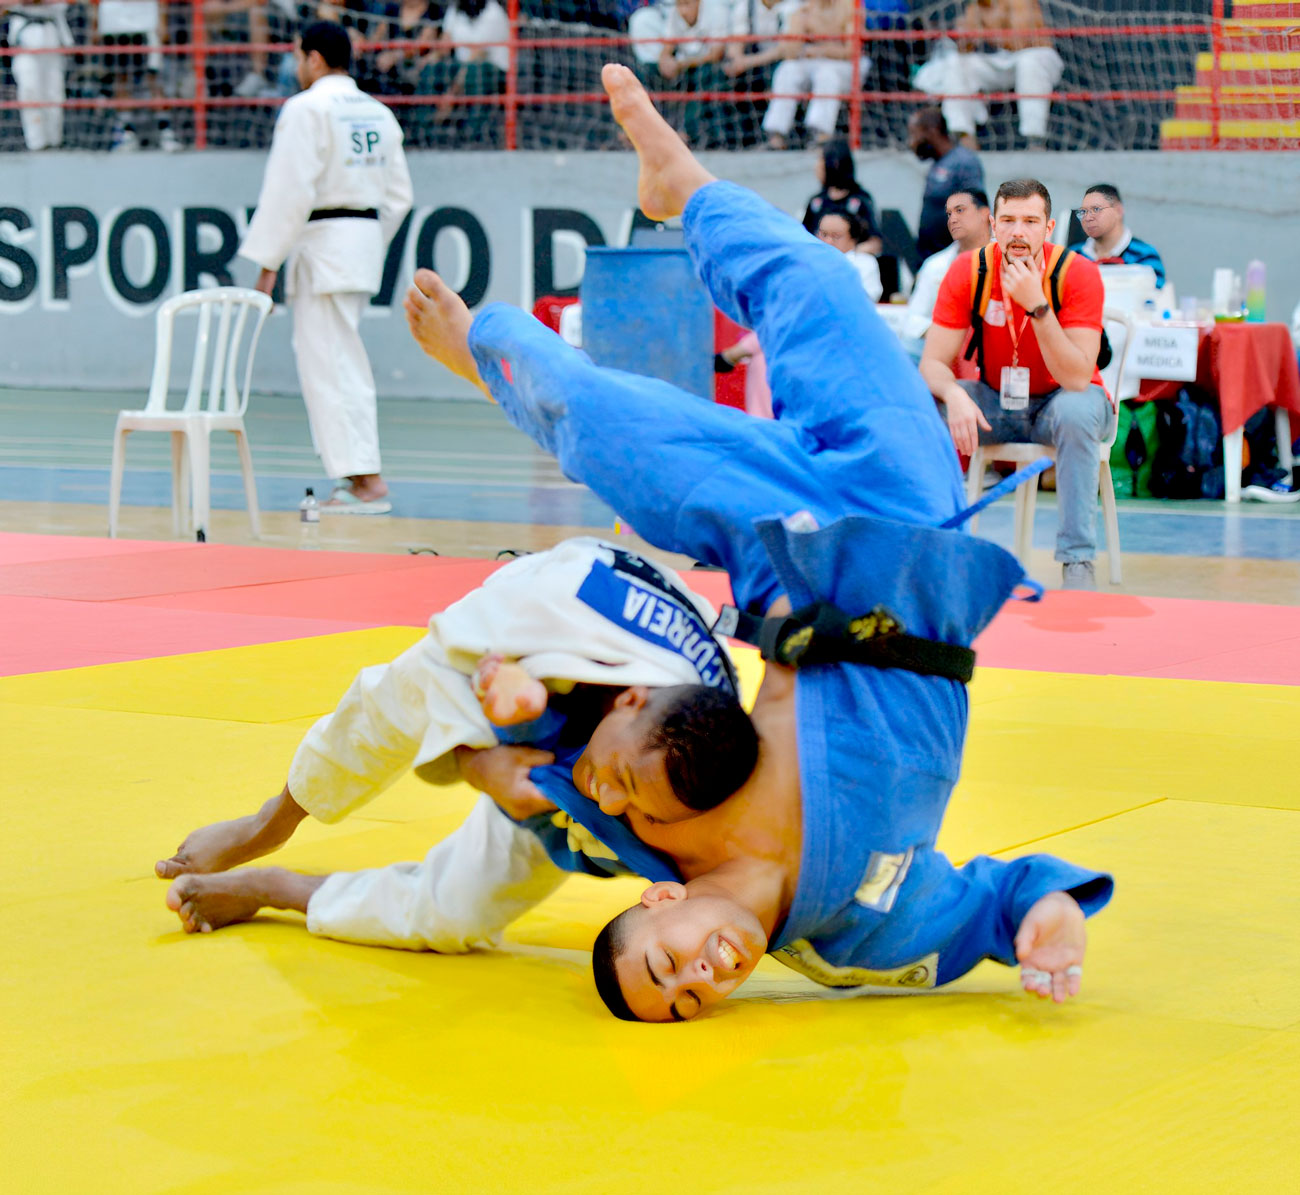 Um judoca com uniforme azul e amarelo.